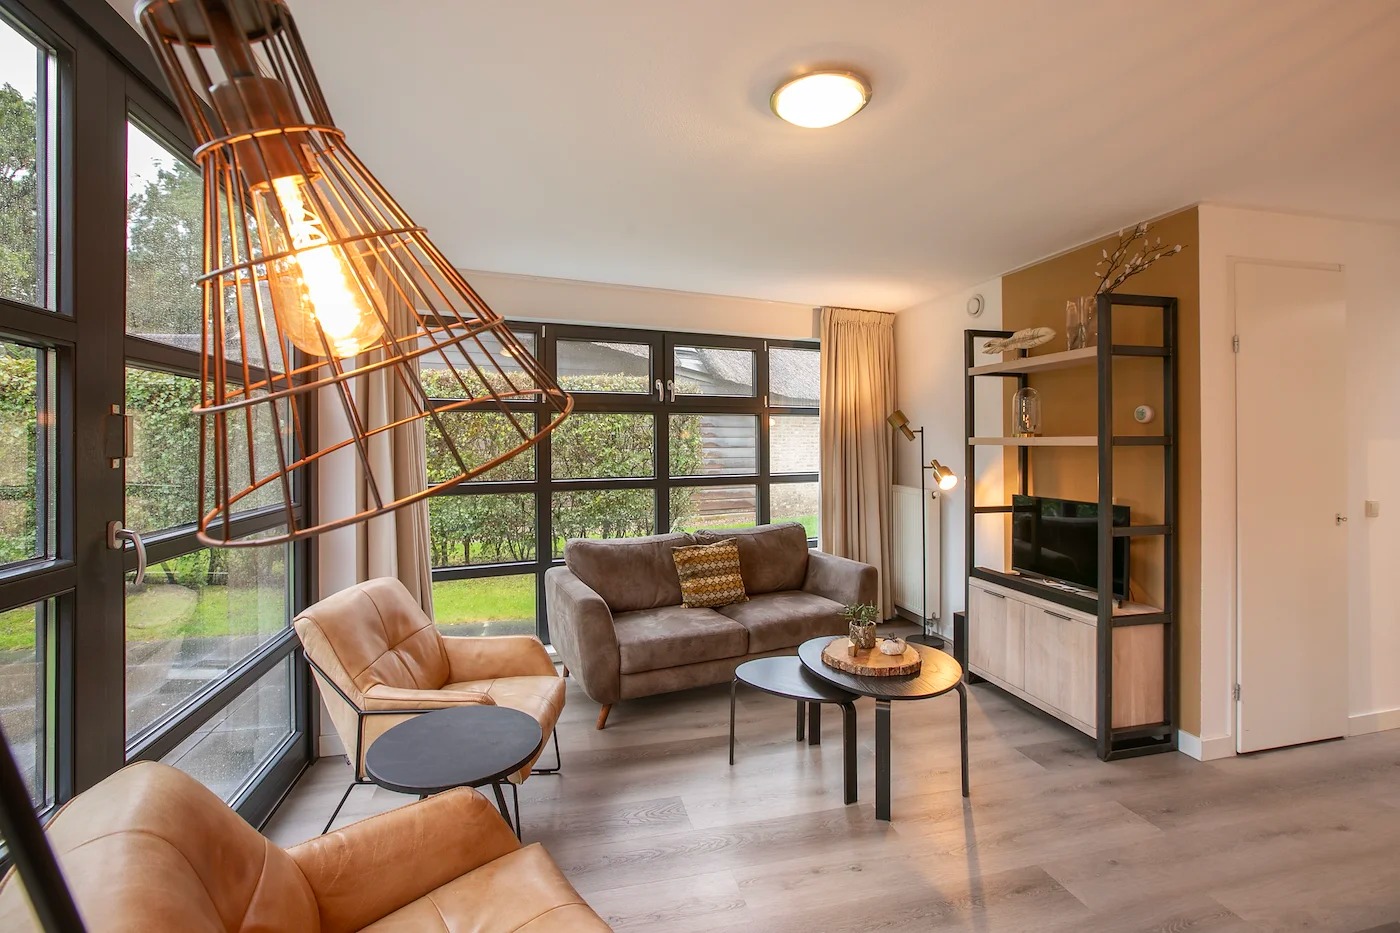 Villapparte-Dormio Resorts-Buitenhuis 4-Knus vakantiehuis voor 4 personen-Park Scorleduyn-Schoorl-Noord-Holland-sfeervolle zithoek